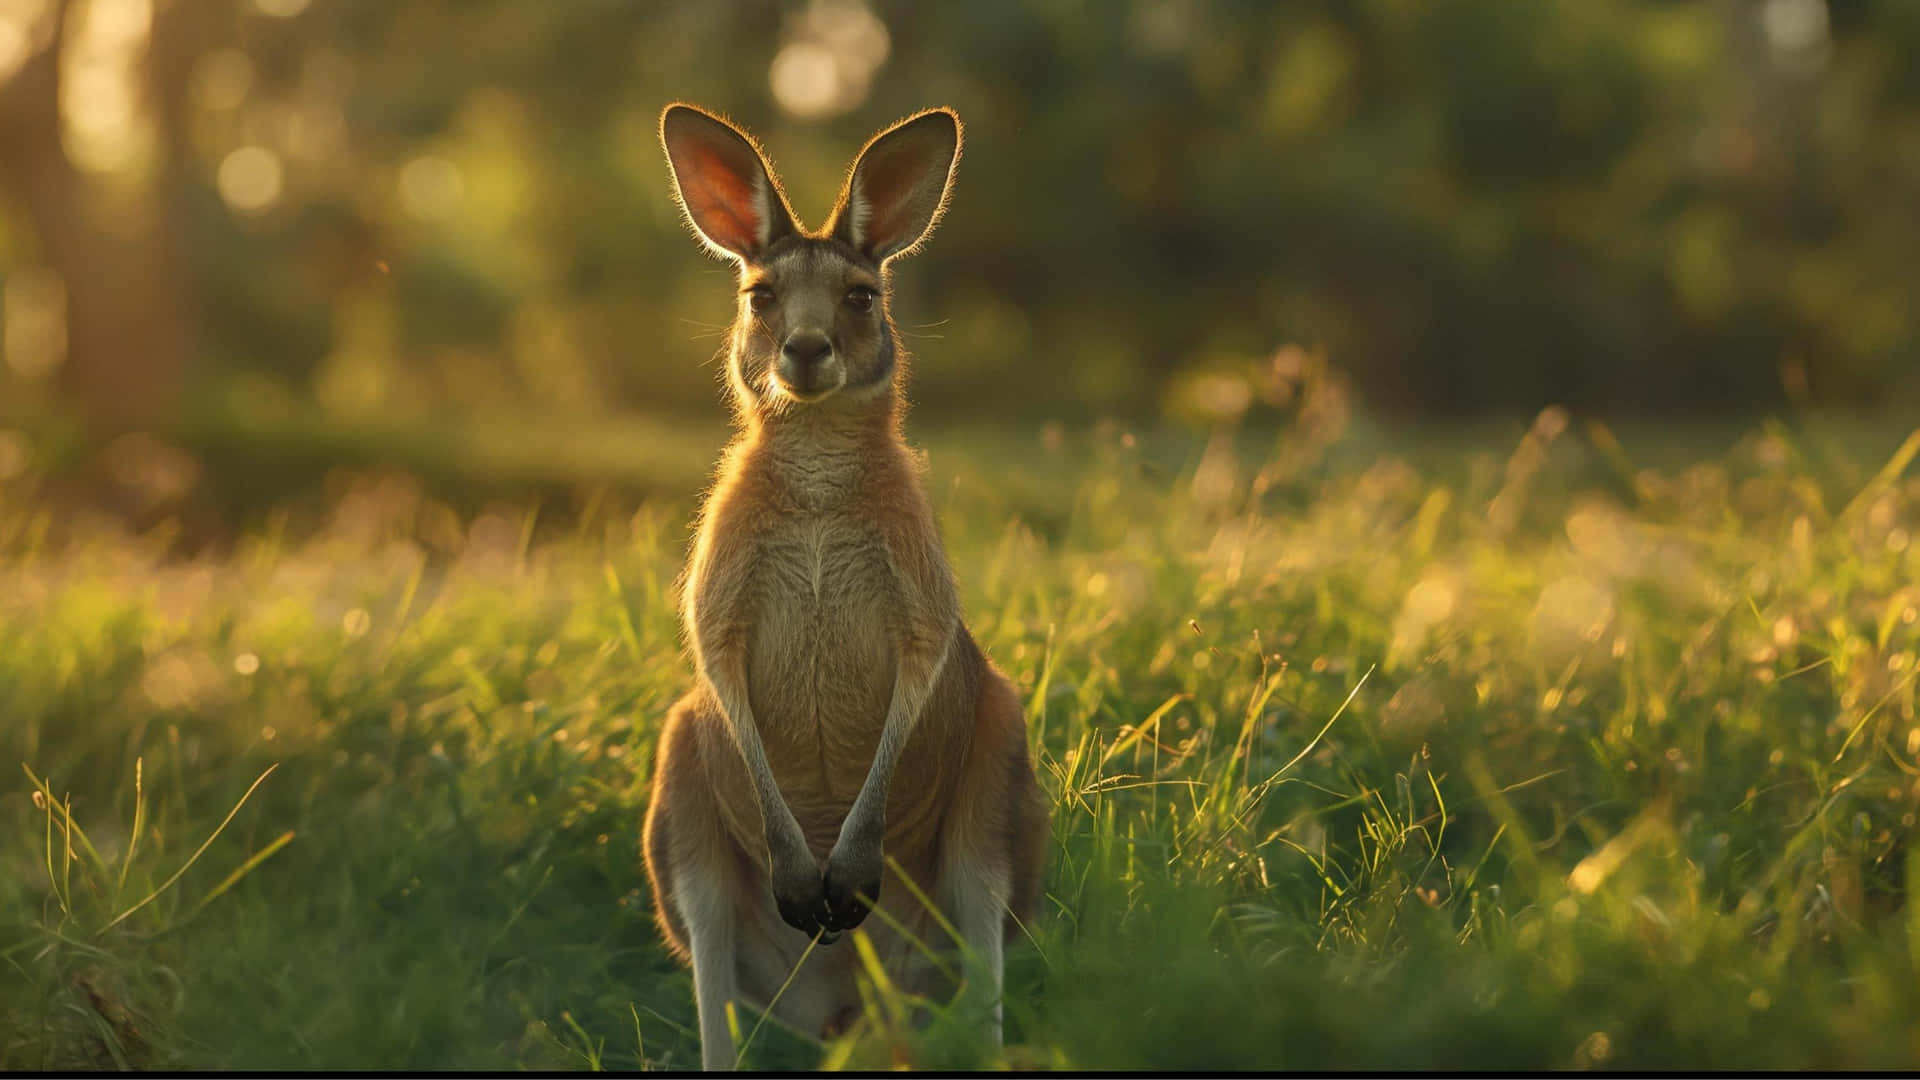 Kangarooin Sunset Grassland4 K Wallpaper